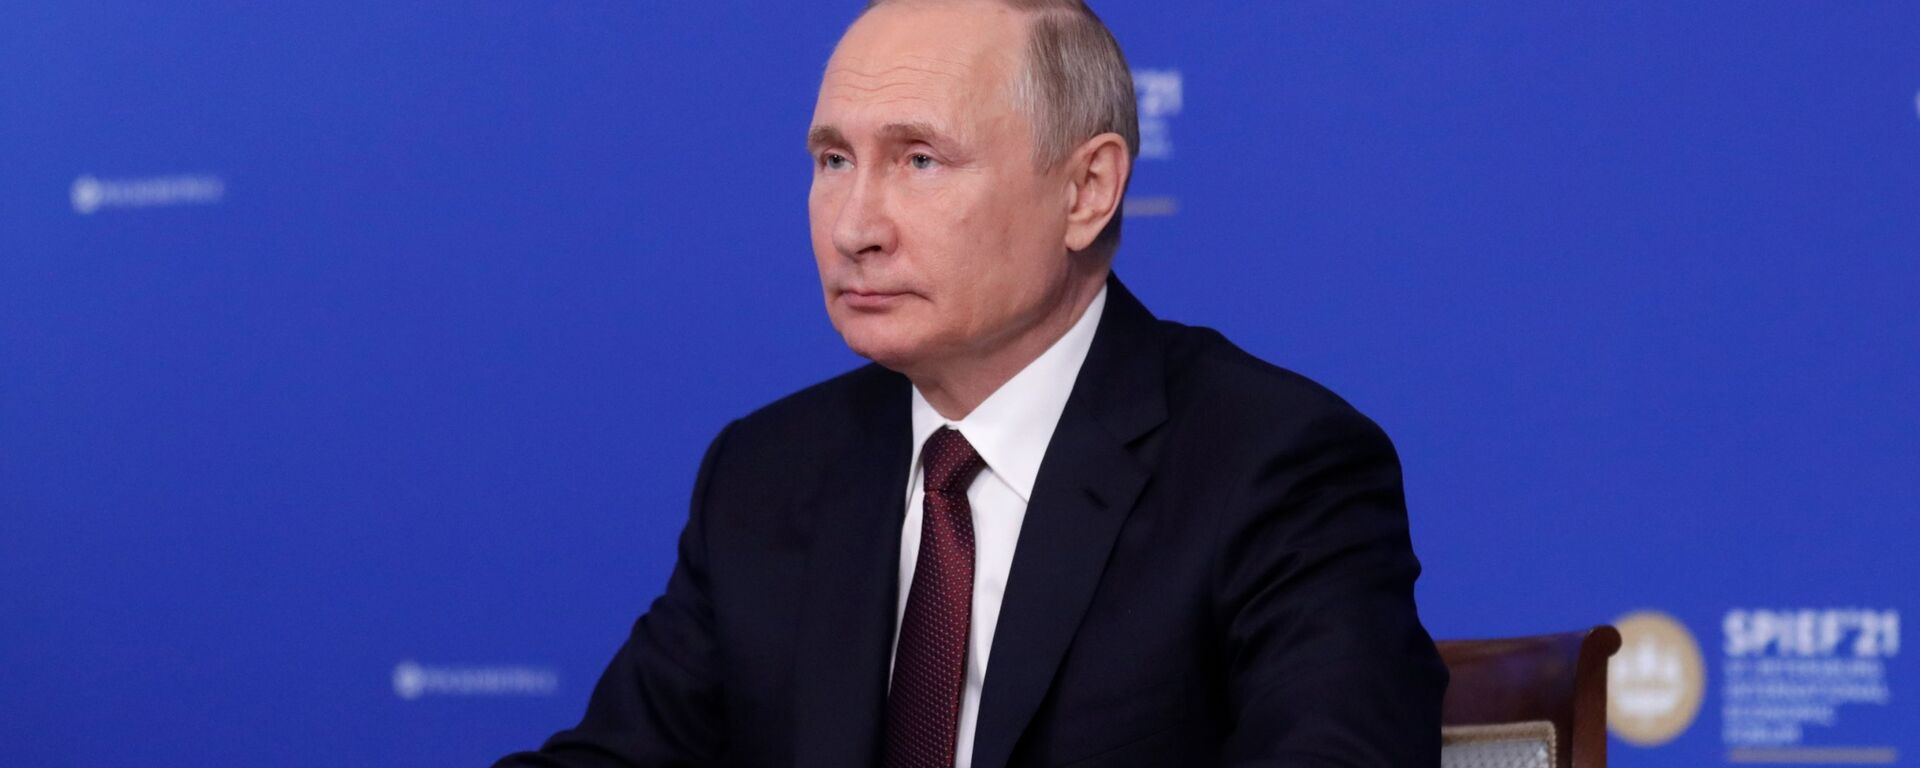 الرئيس الروسي فلاديمير بوتين خلال المنتدى الاقتصادي الدولي سانت بطرسبورغ 2021 - سبوتنيك عربي, 1920, 14.06.2021